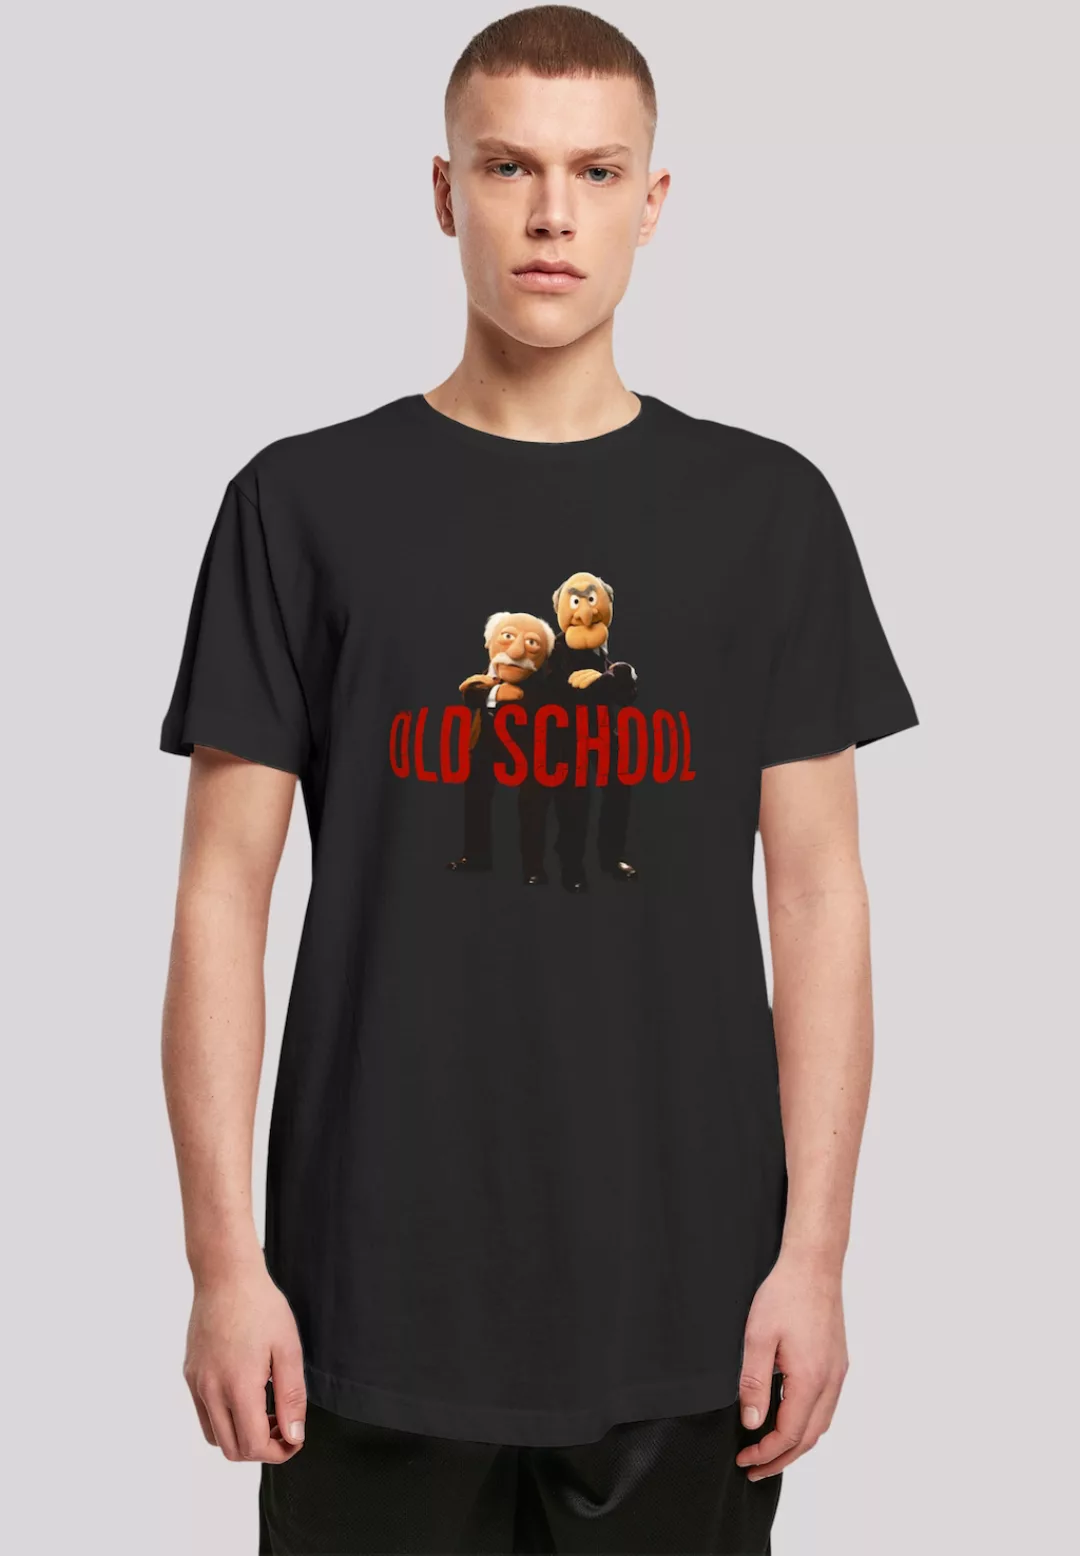 F4NT4STIC T-Shirt "Disney Muppets Old school", Premium Qualität günstig online kaufen